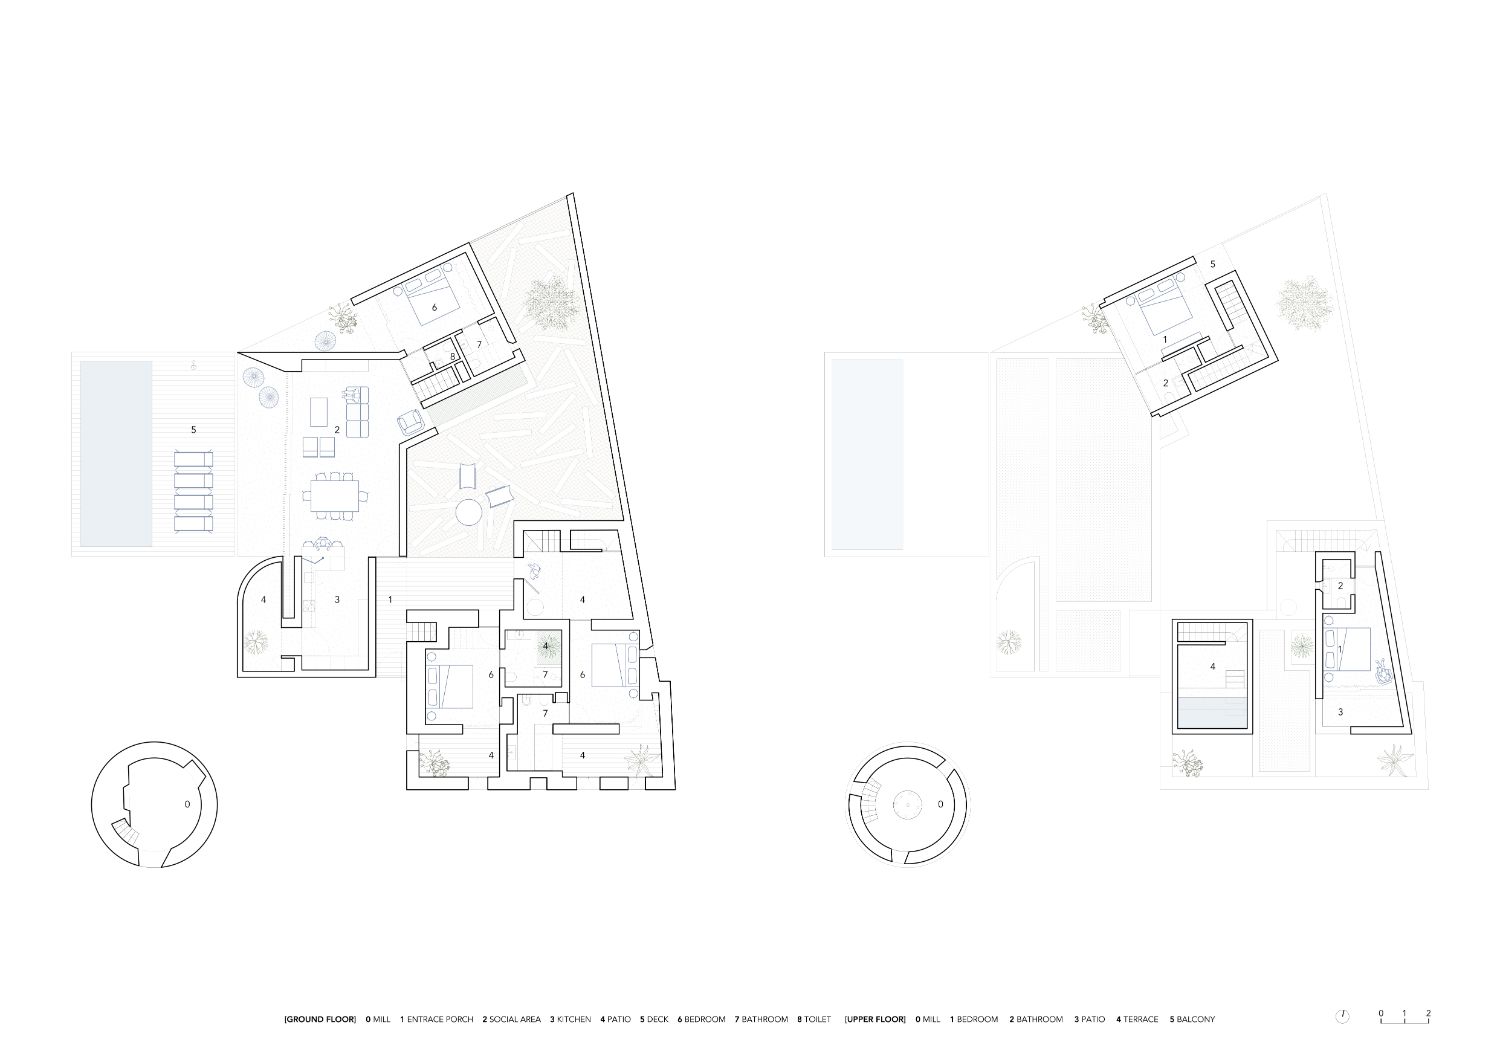 Plan drawing of Casa Cabrita Moleiro